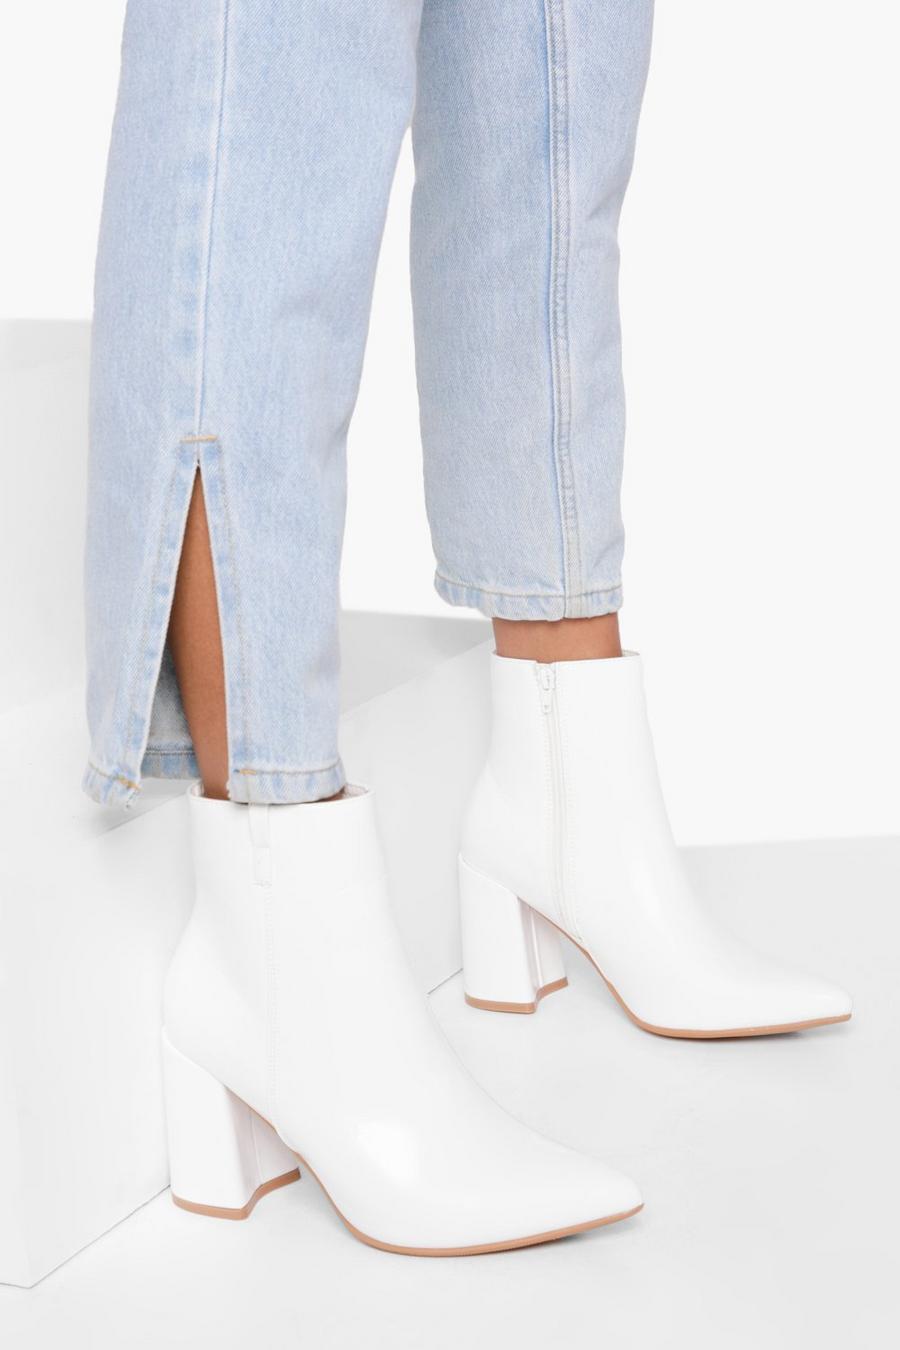 Botas calcetín con tacón grueso y punta de pico, White blanco